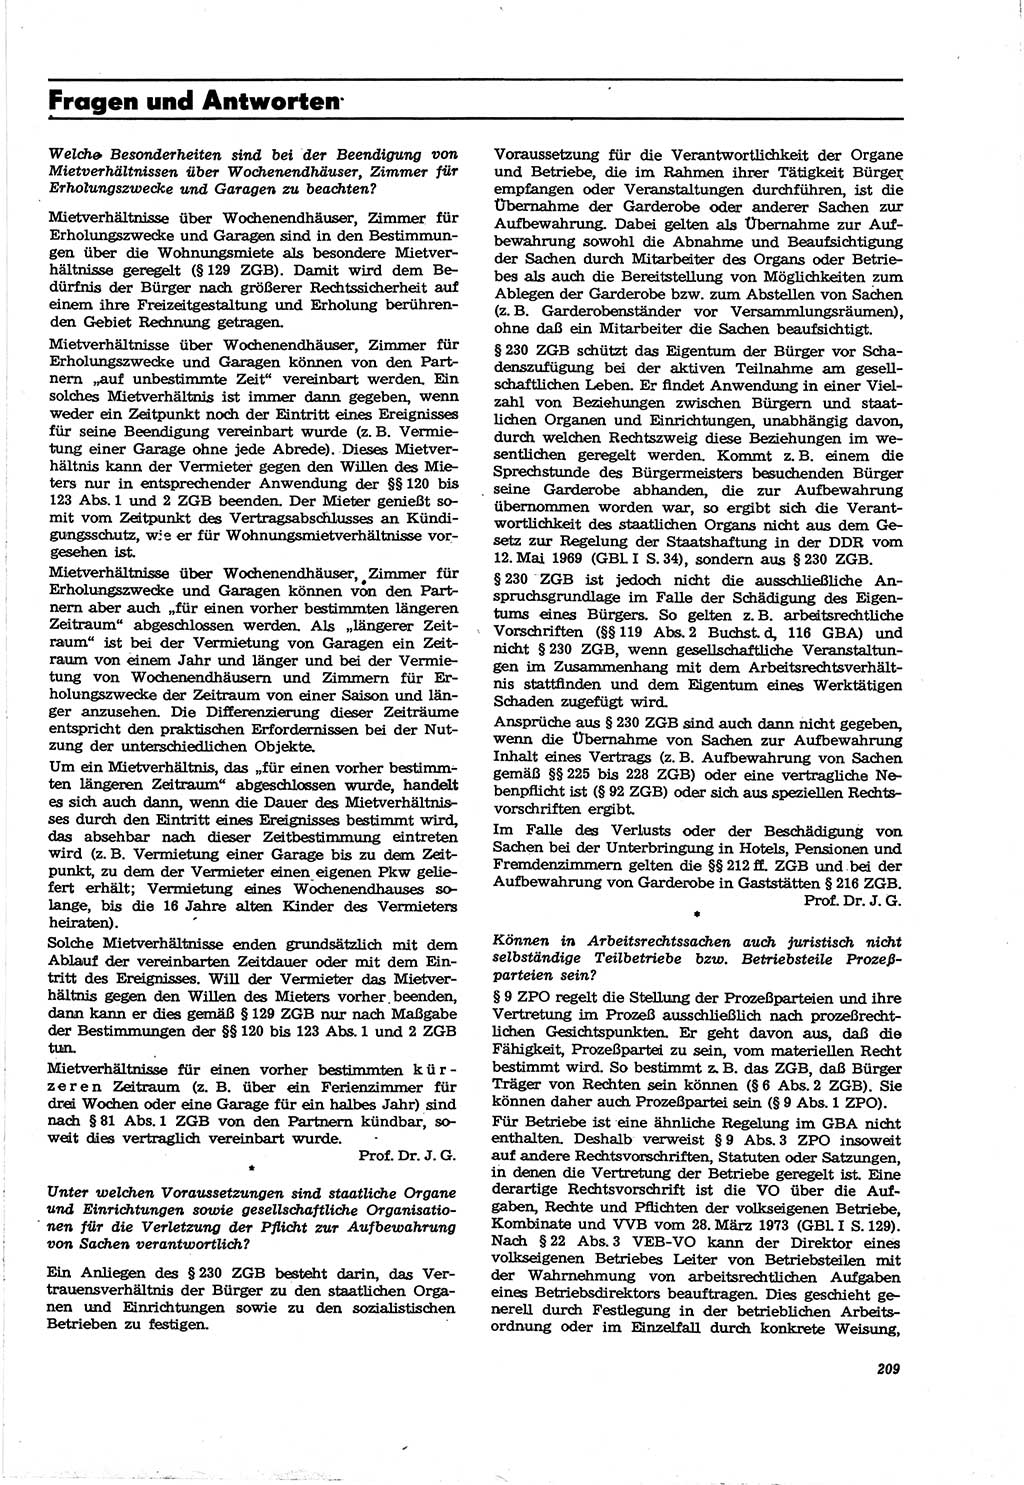 Neue Justiz (NJ), Zeitschrift für Recht und Rechtswissenschaft [Deutsche Demokratische Republik (DDR)], 30. Jahrgang 1976, Seite 209 (NJ DDR 1976, S. 209)